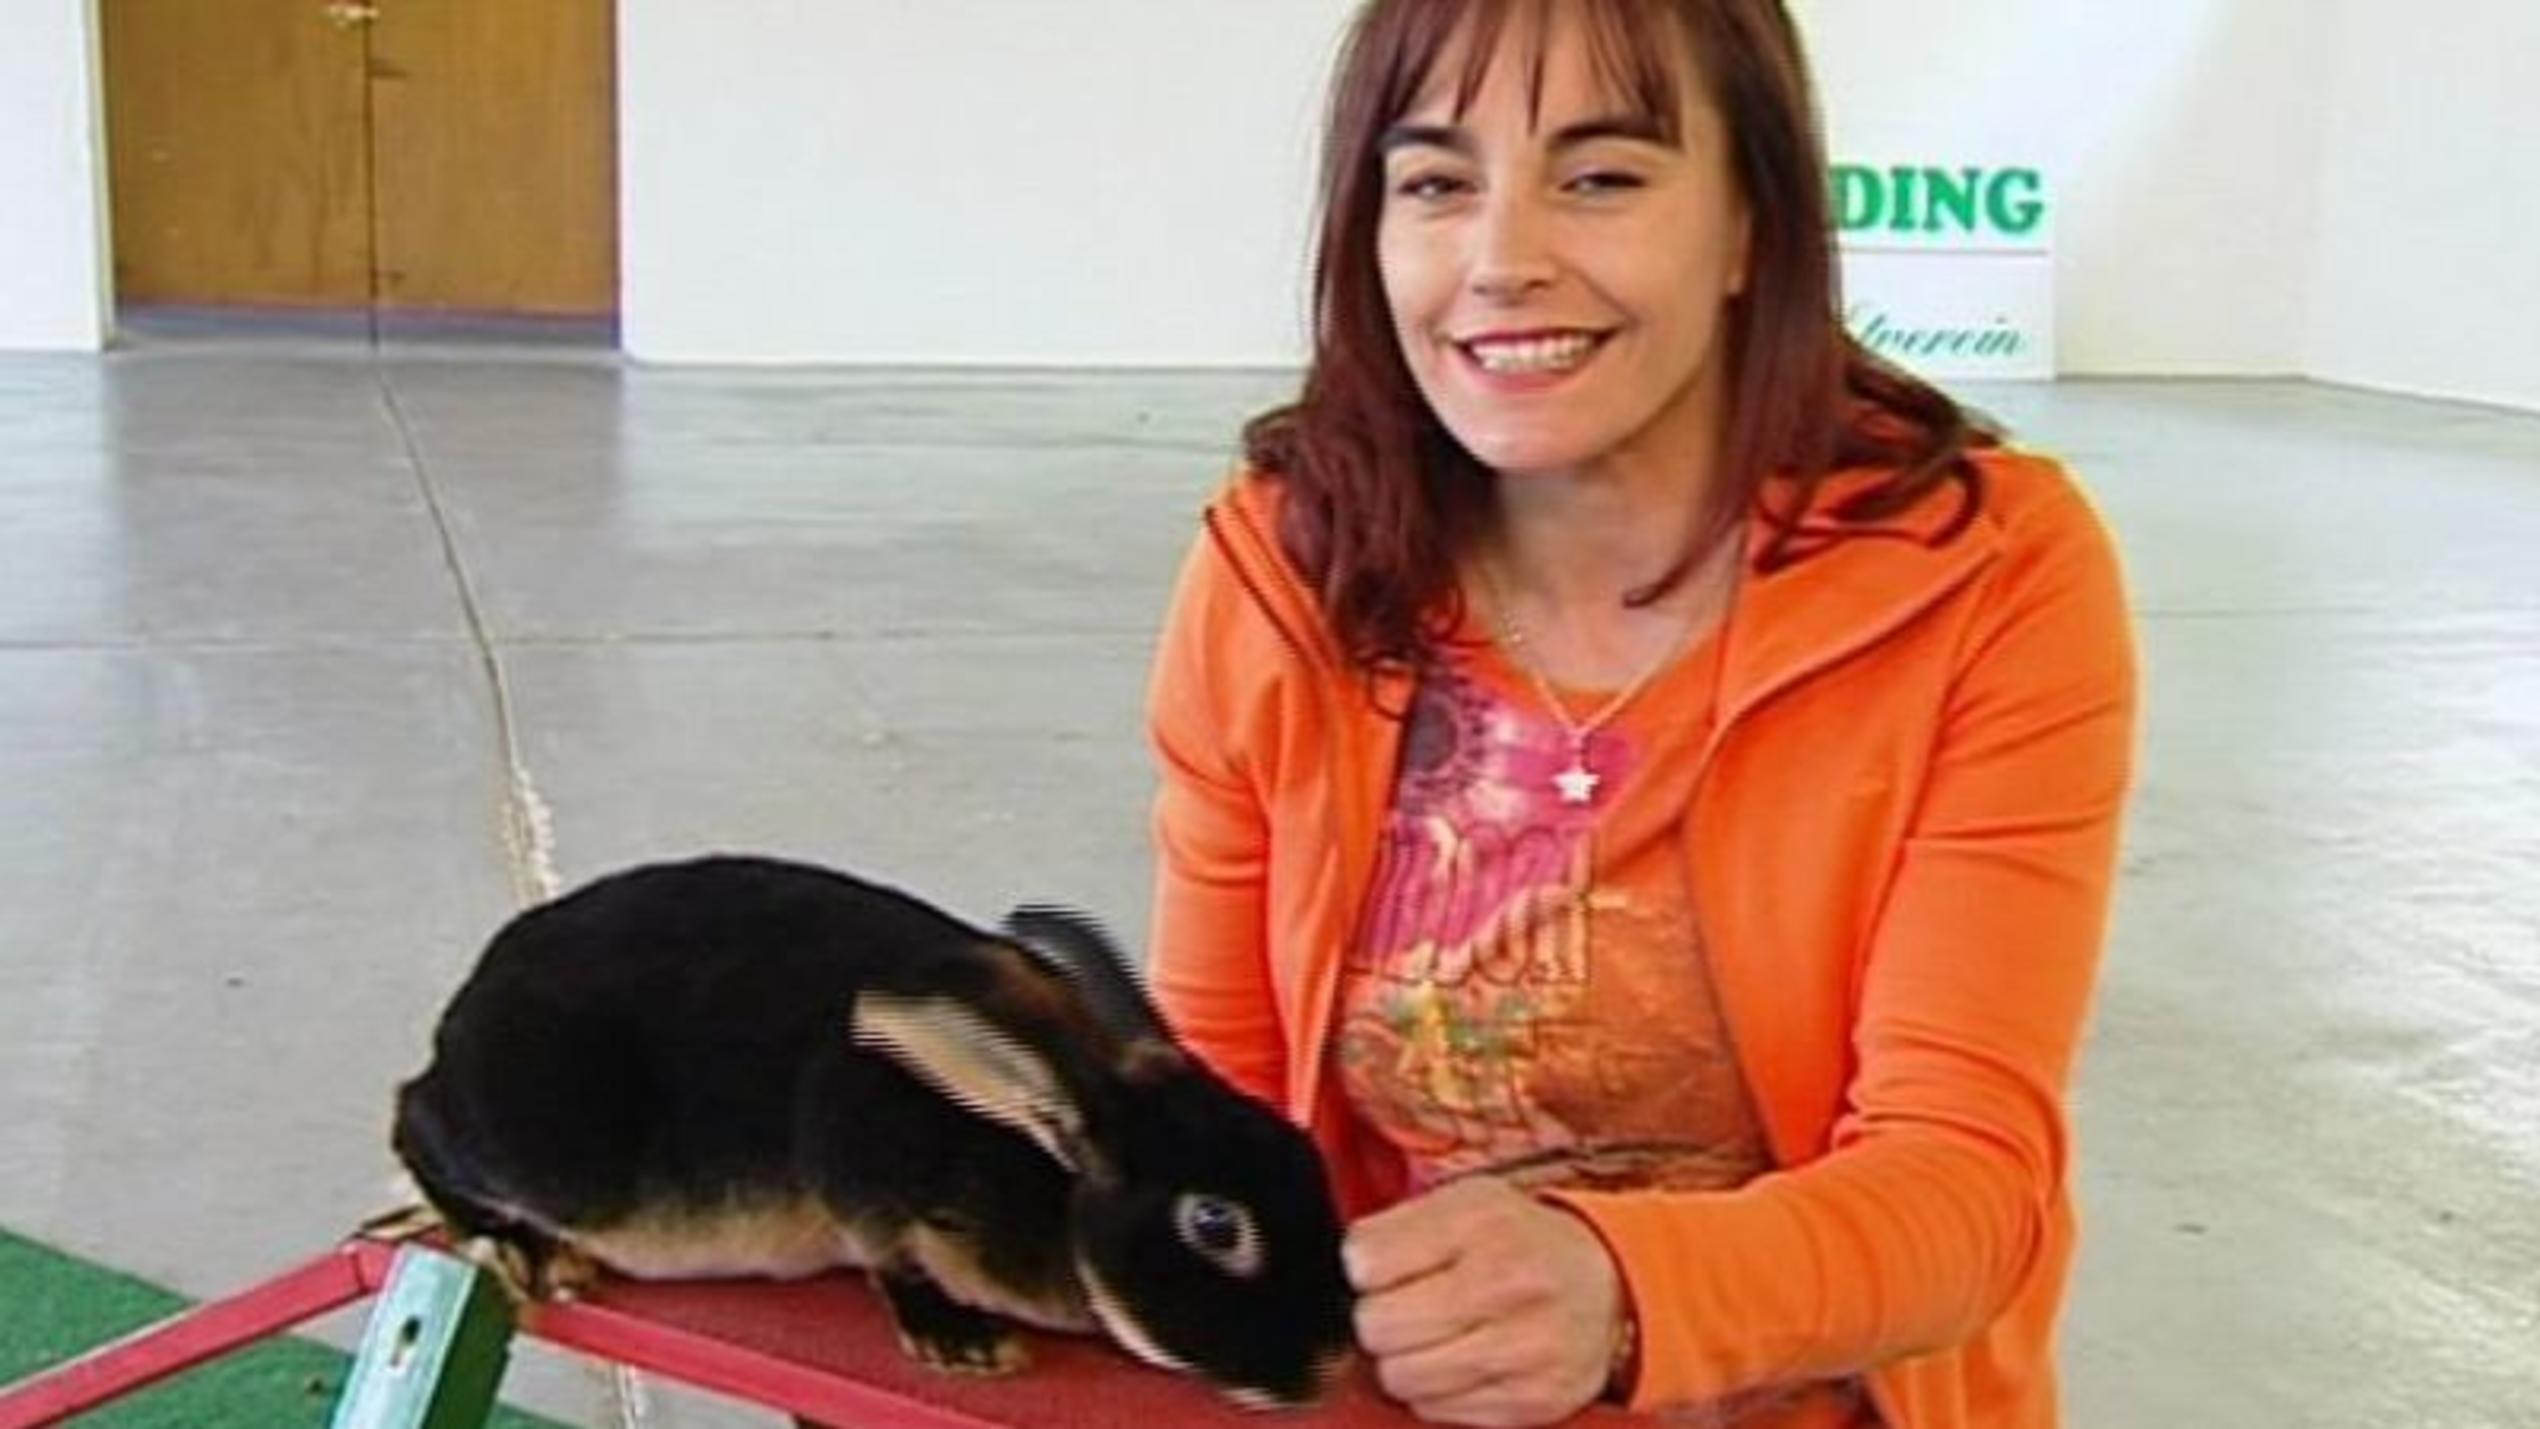 hundkatzemaus-Reporterin Diana Eichhorn mit Kaninchen Snörre. Foto: VOX/VP